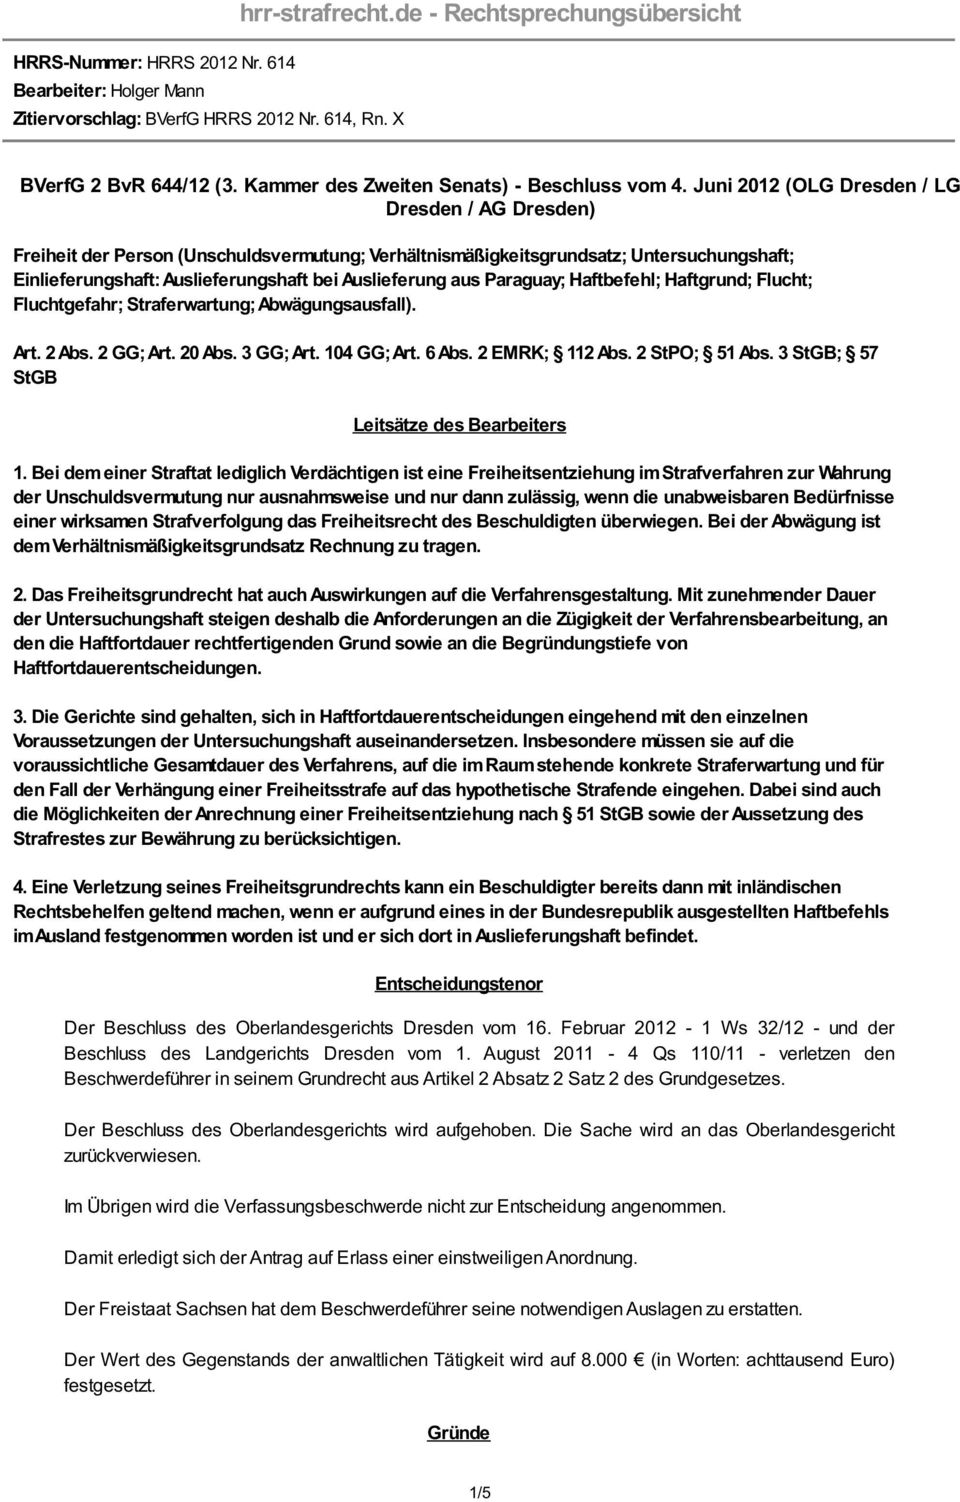 Juni 2012 (OLG Dresden / LG Dresden / AG Dresden) Freiheit der Person (Unschuldsvermutung; Verhältnismäßigkeitsgrundsatz; Untersuchungshaft; Einlieferungshaft: Auslieferungshaft bei Auslieferung aus